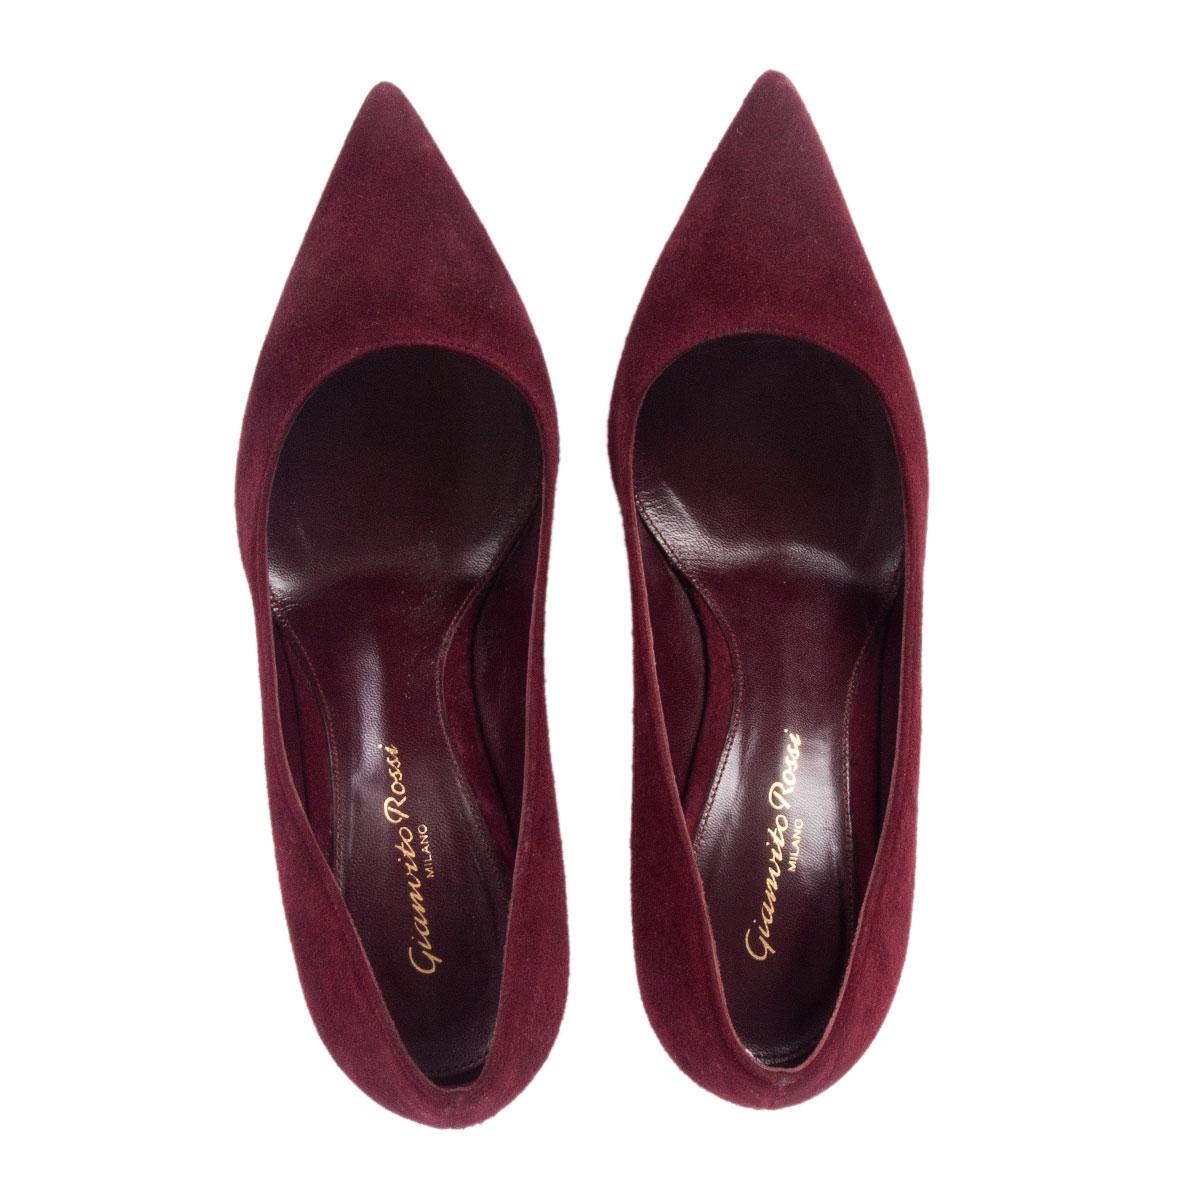 burgundy pumps shoes